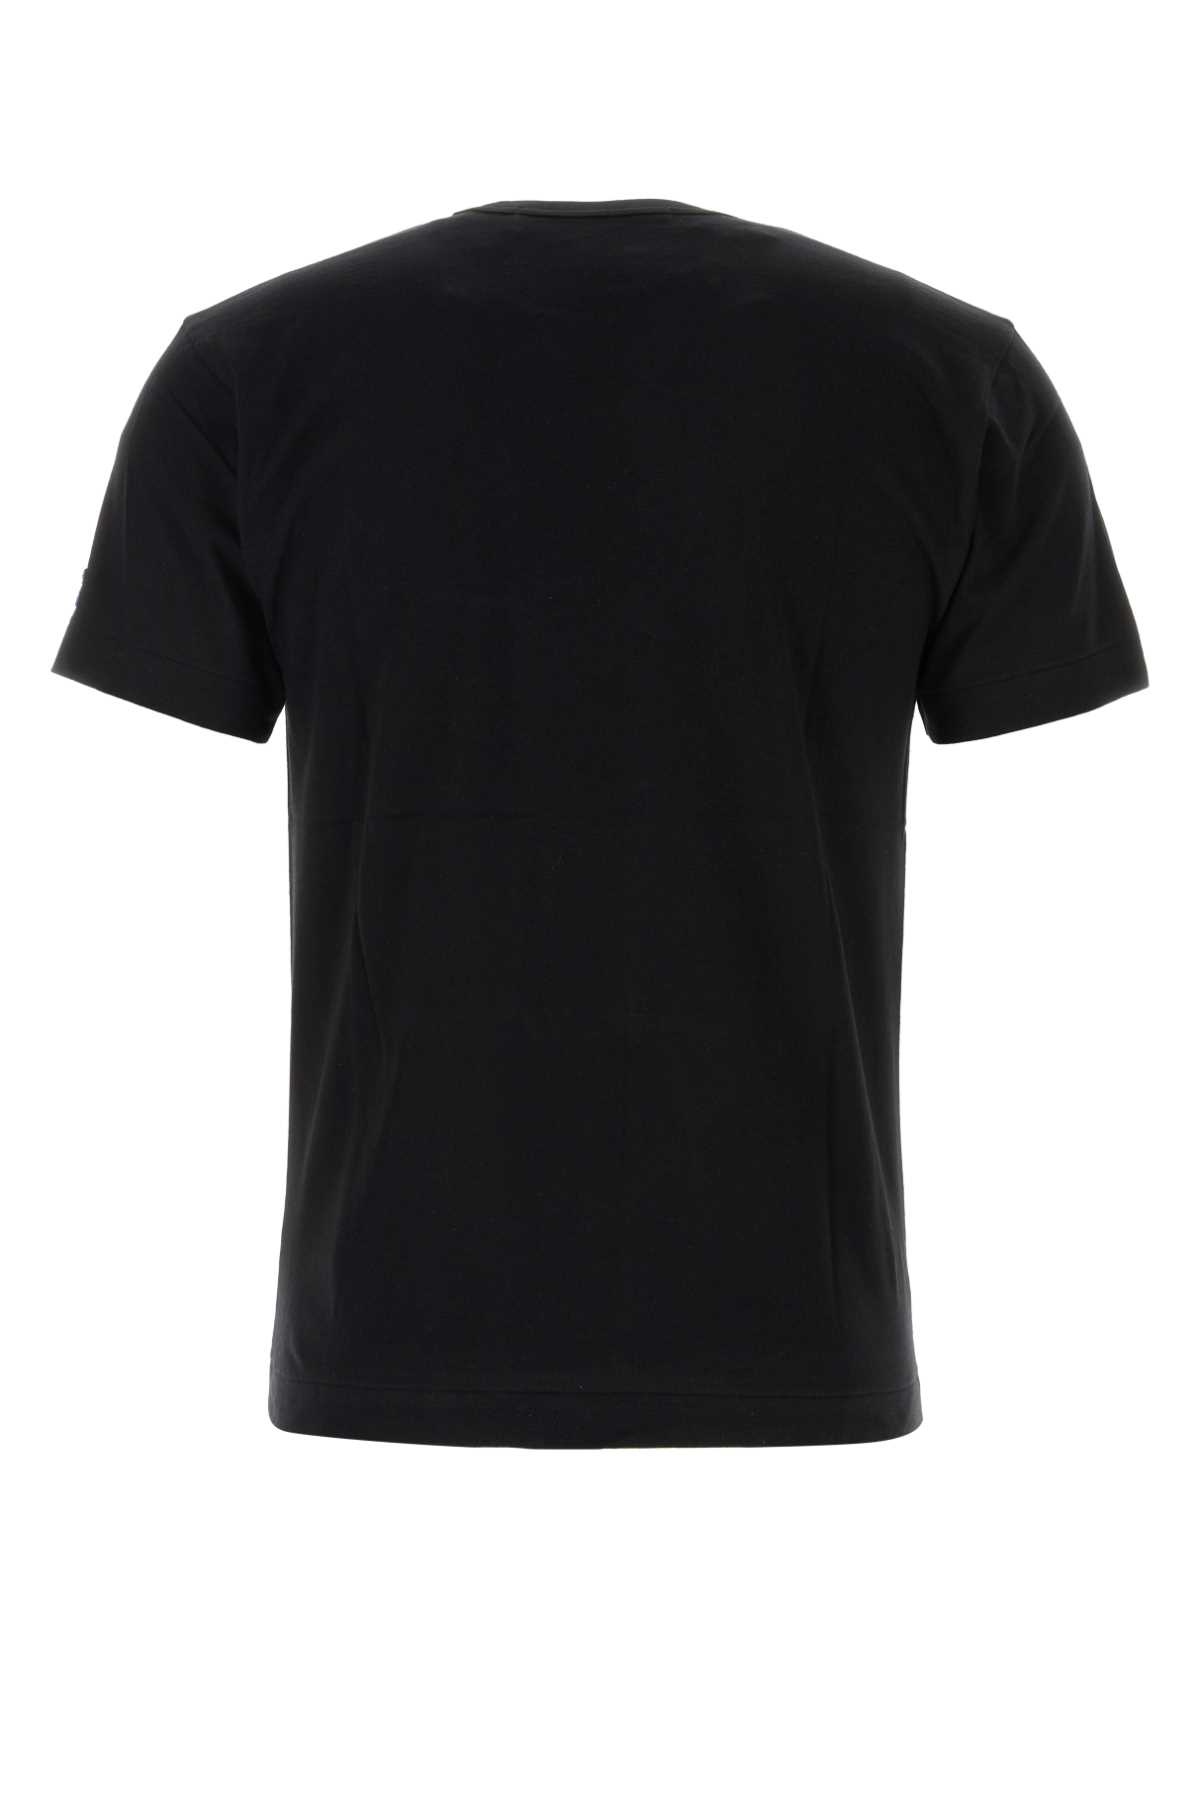 Comme Des Garçons Play Black Cotton T-shirt